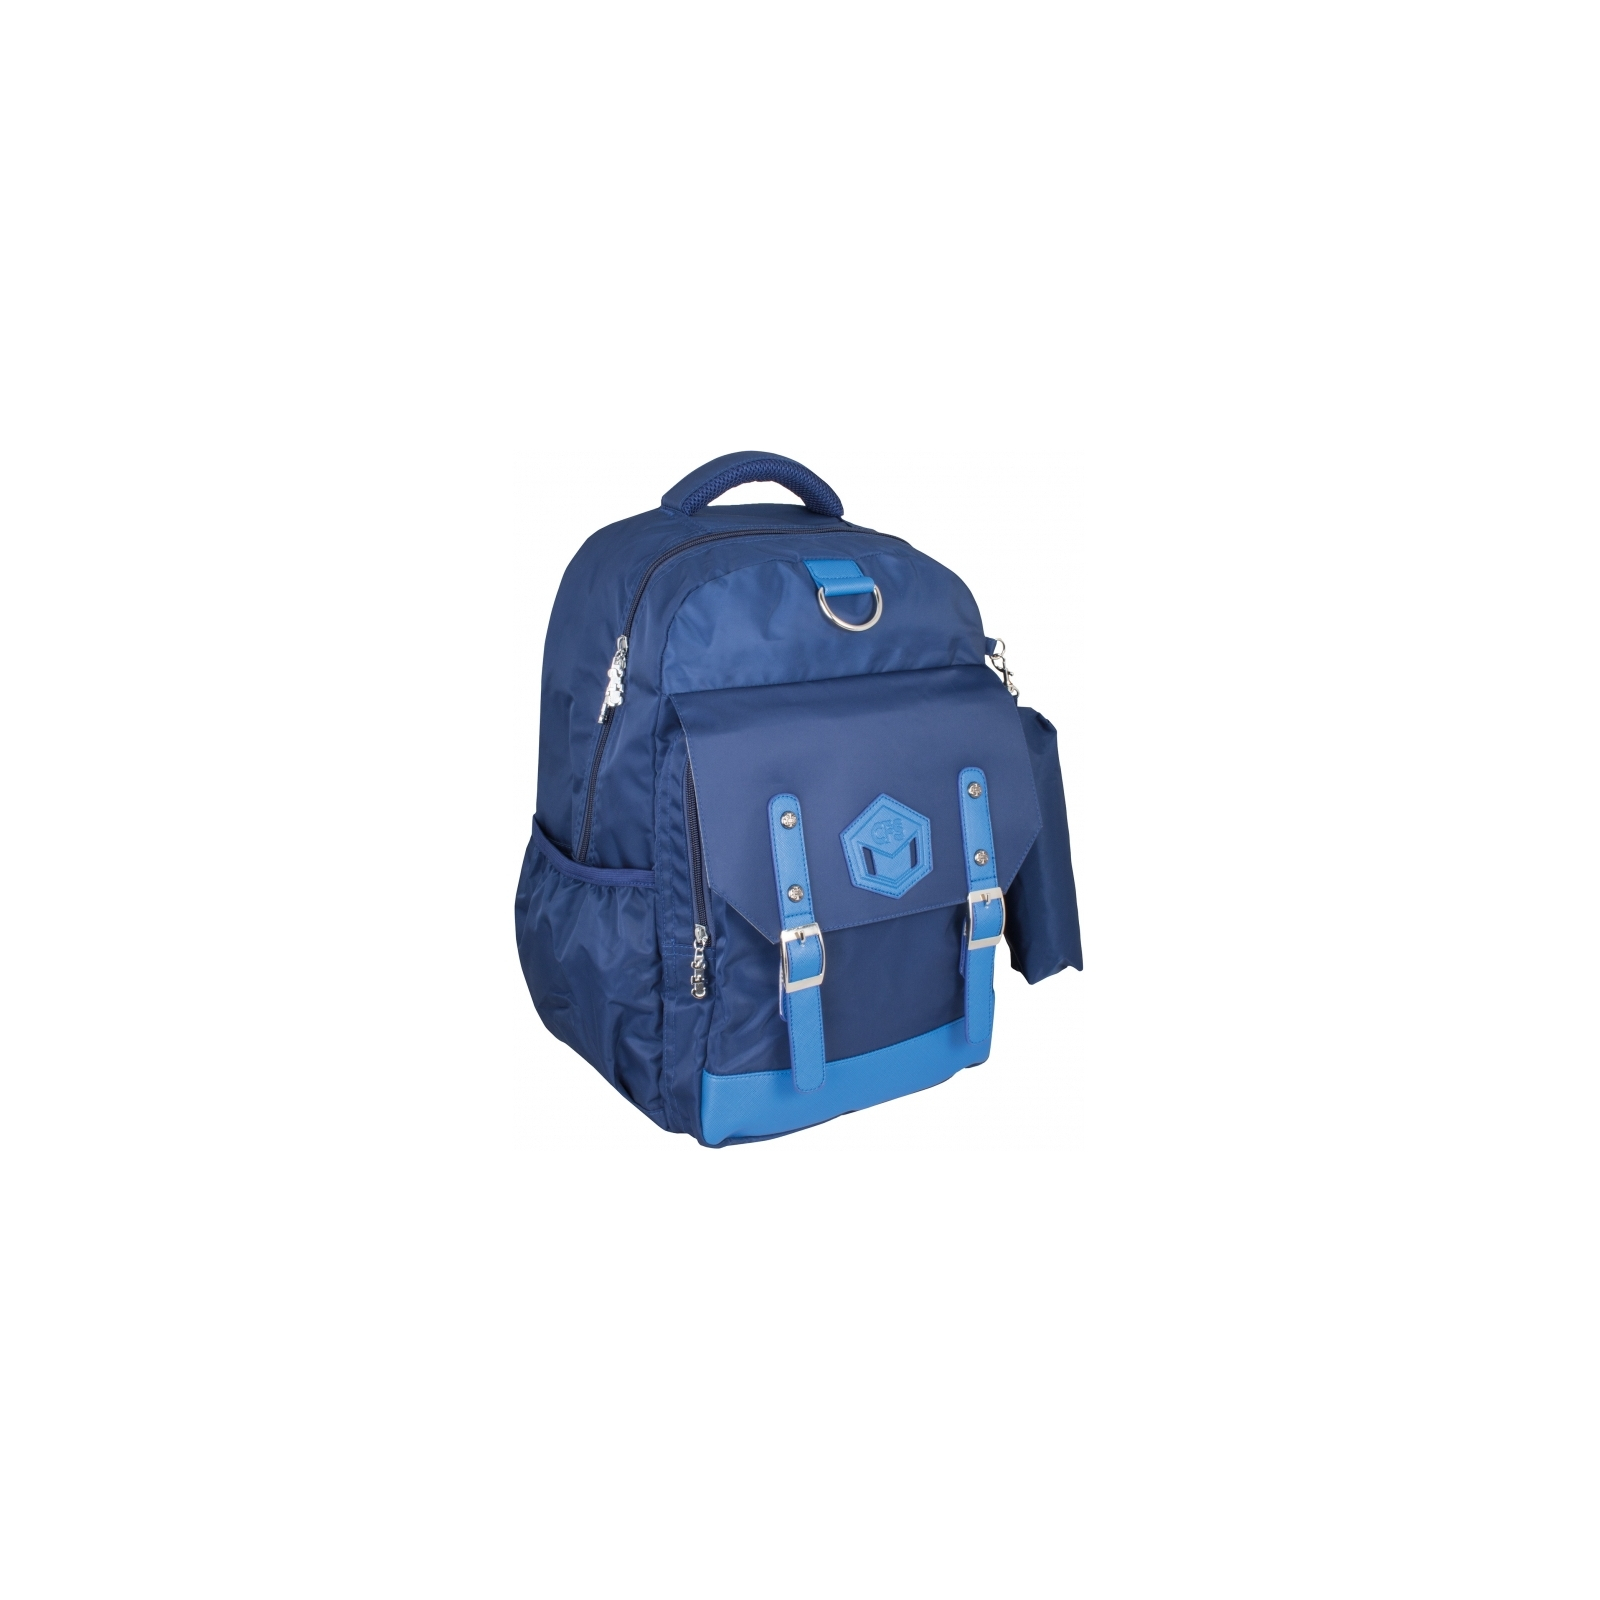 Рюкзак шкільний Cool For School 42 * 29 * 18 см 26-35 л, Для хлопчиків, синій (CF86368)